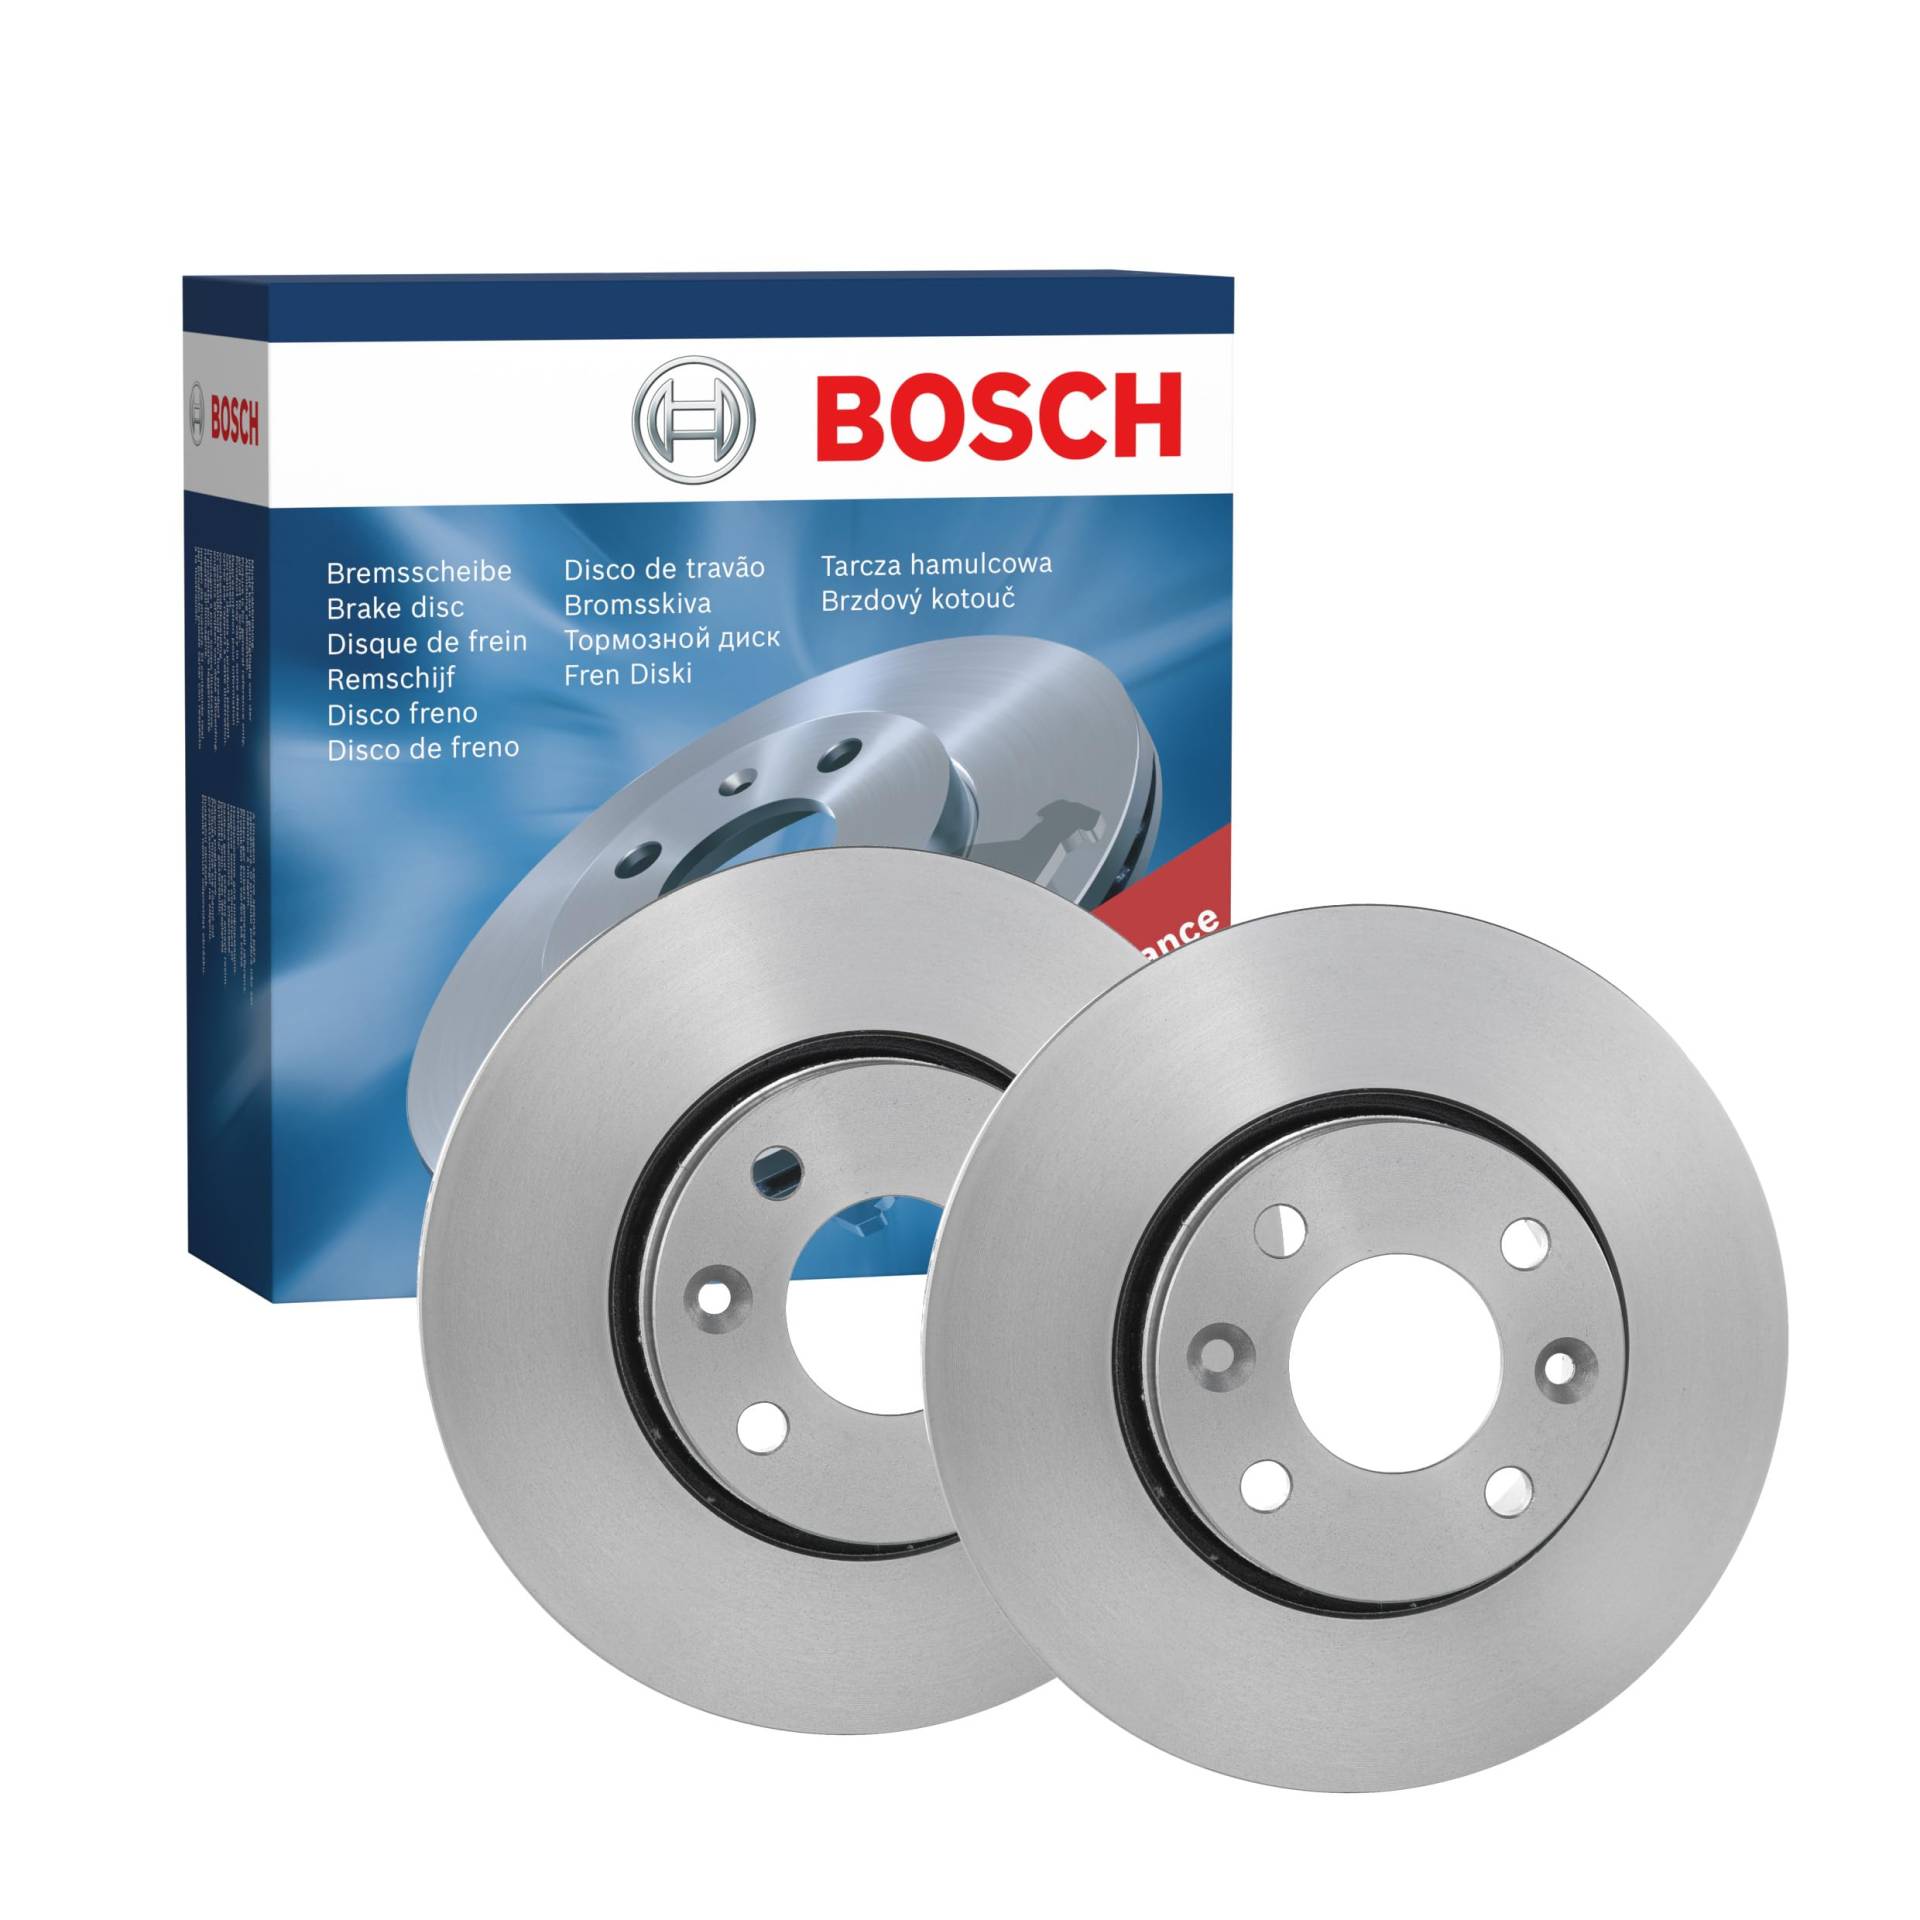 Bosch BD1400 Bremsscheiben - Vorderachse - ECE-R90 Zertifizierung - zwei Bremsscheiben pro Set von Bosch Automotive